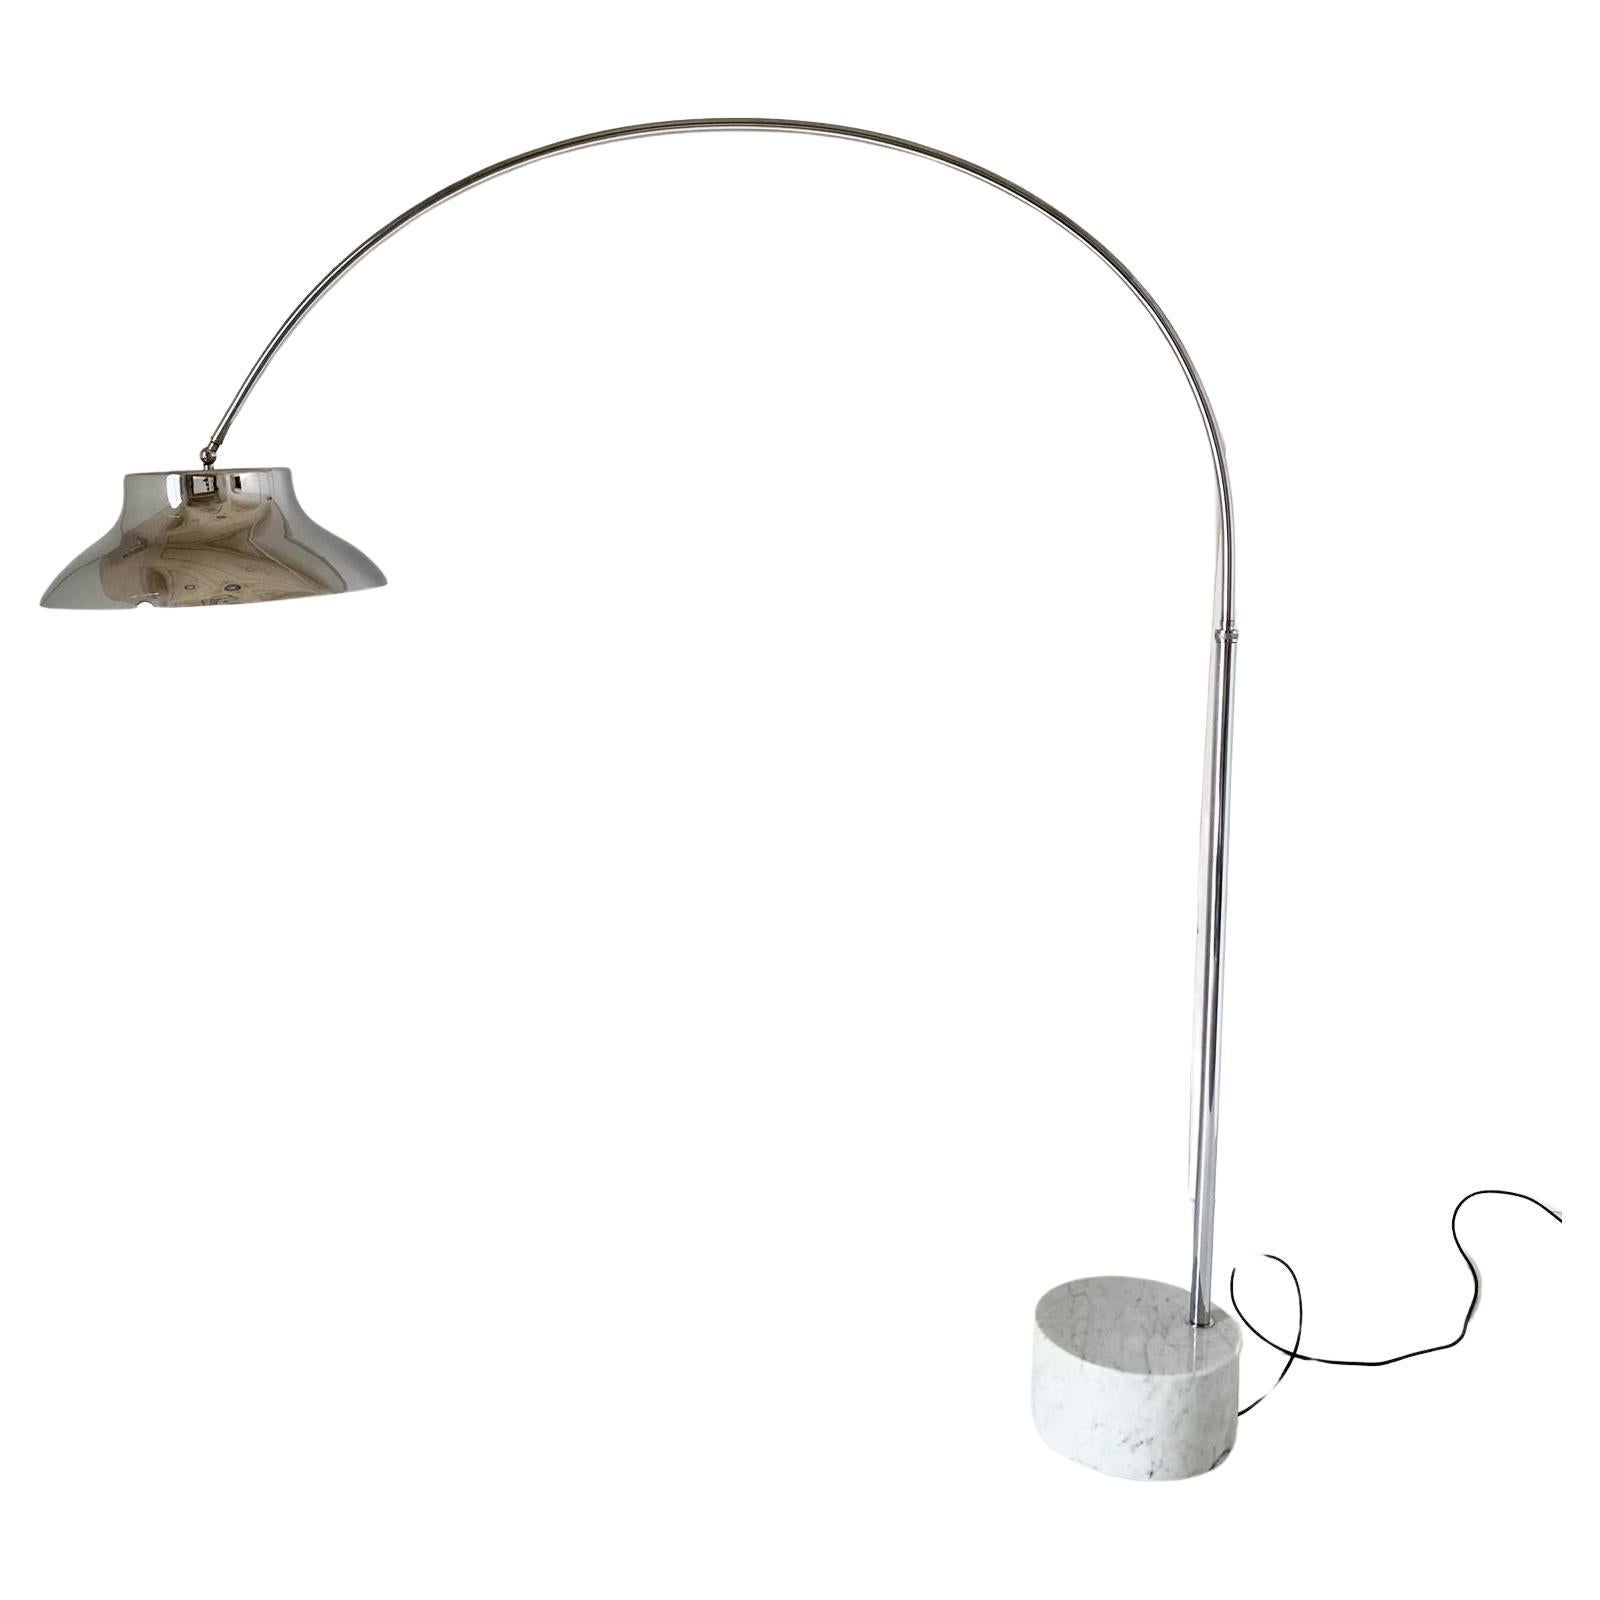 Vintage XL chromed extendible arc floor lamp, Italy, 1960s